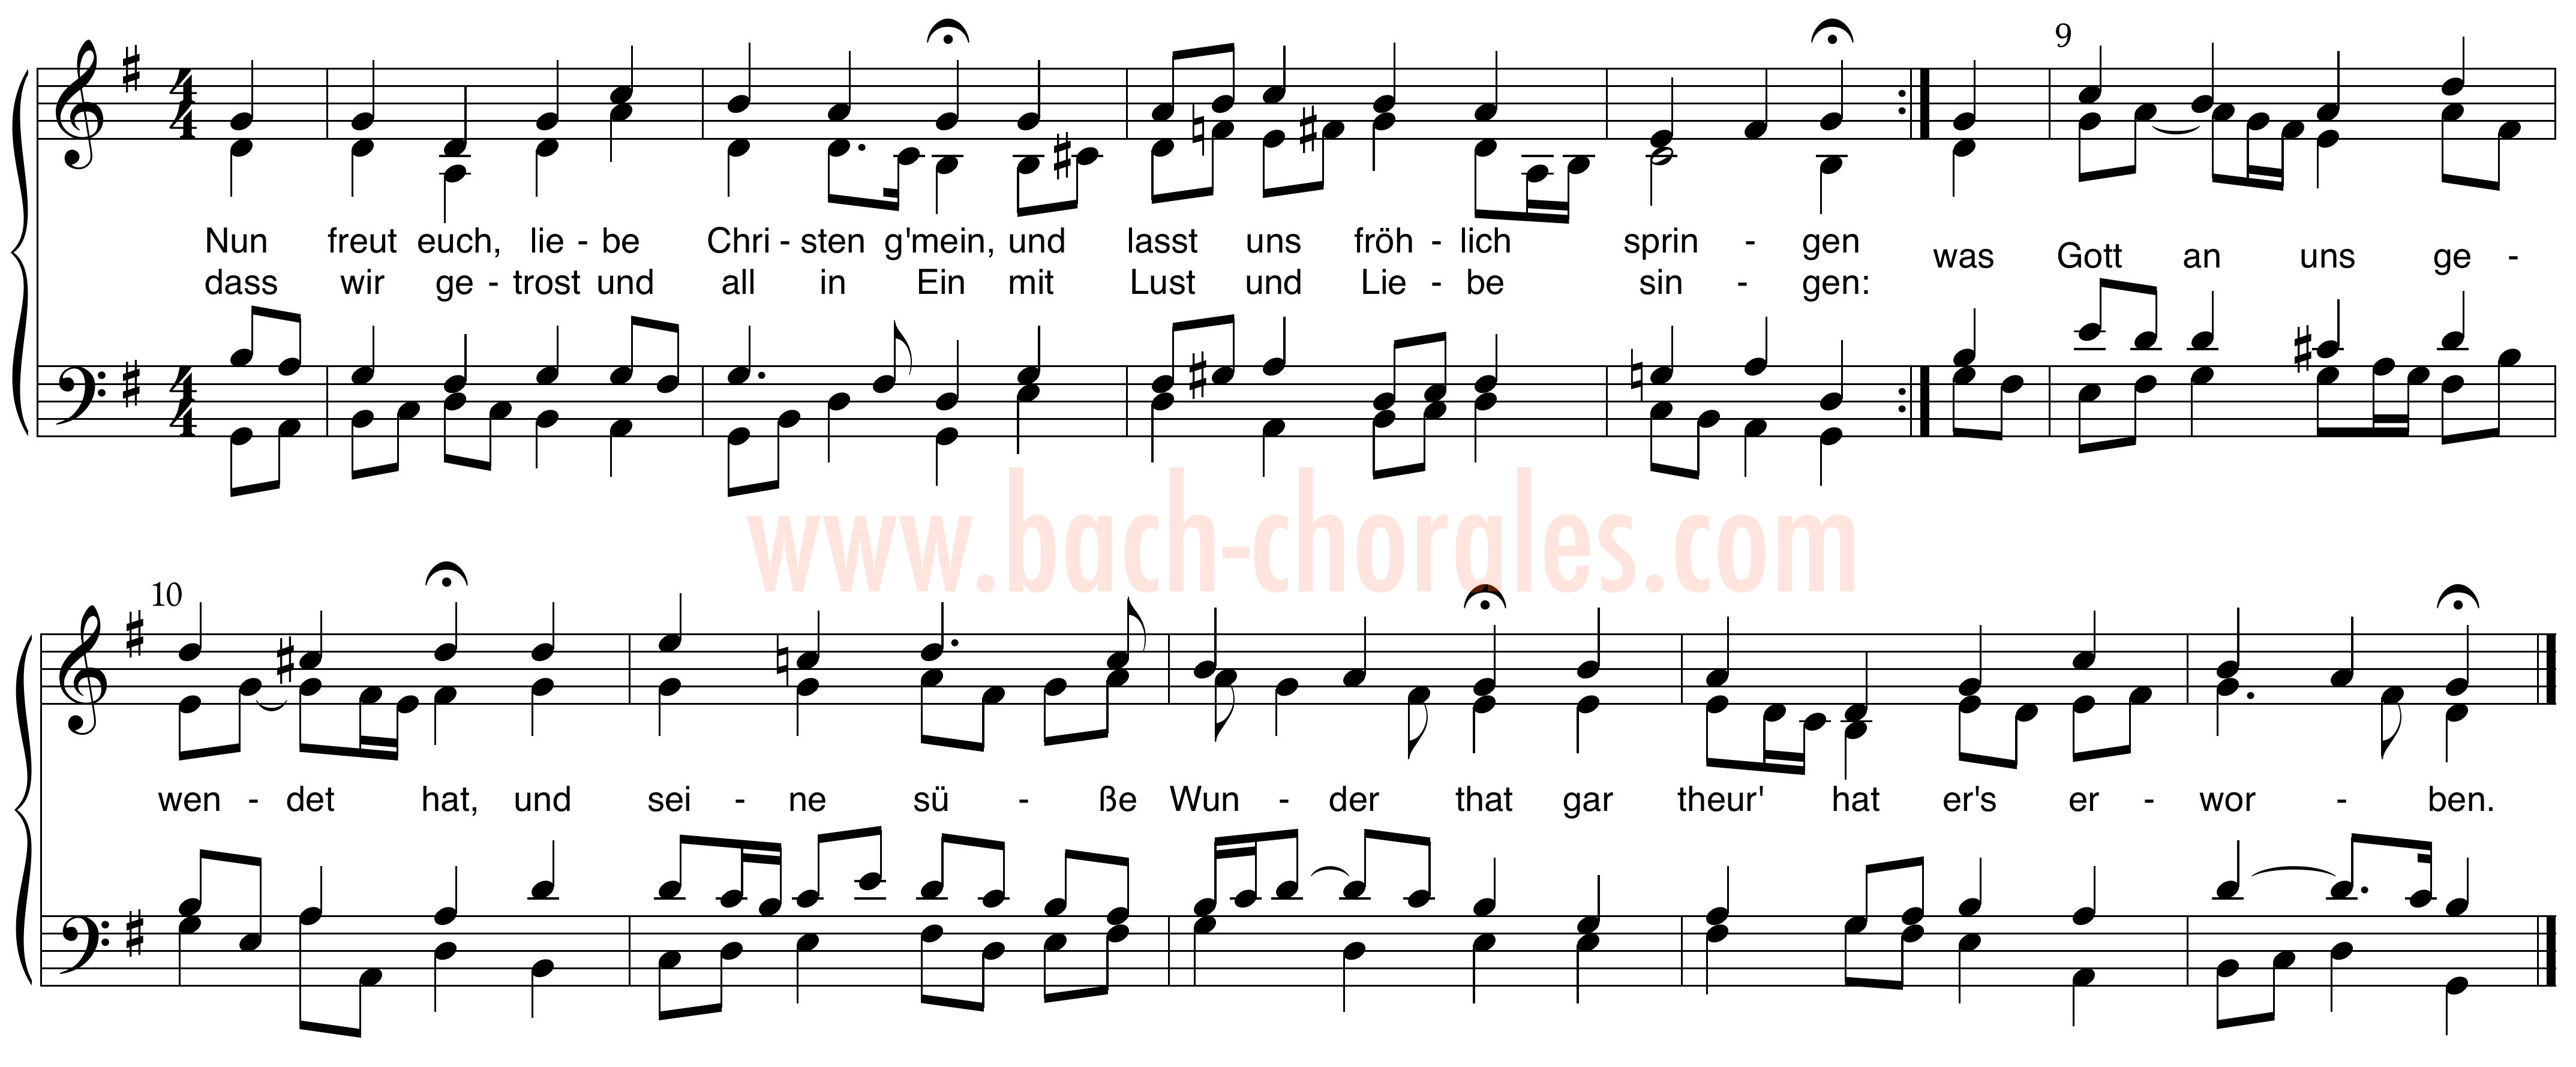 notenbeeld BWV 388 op https://www.bach-chorales.com/